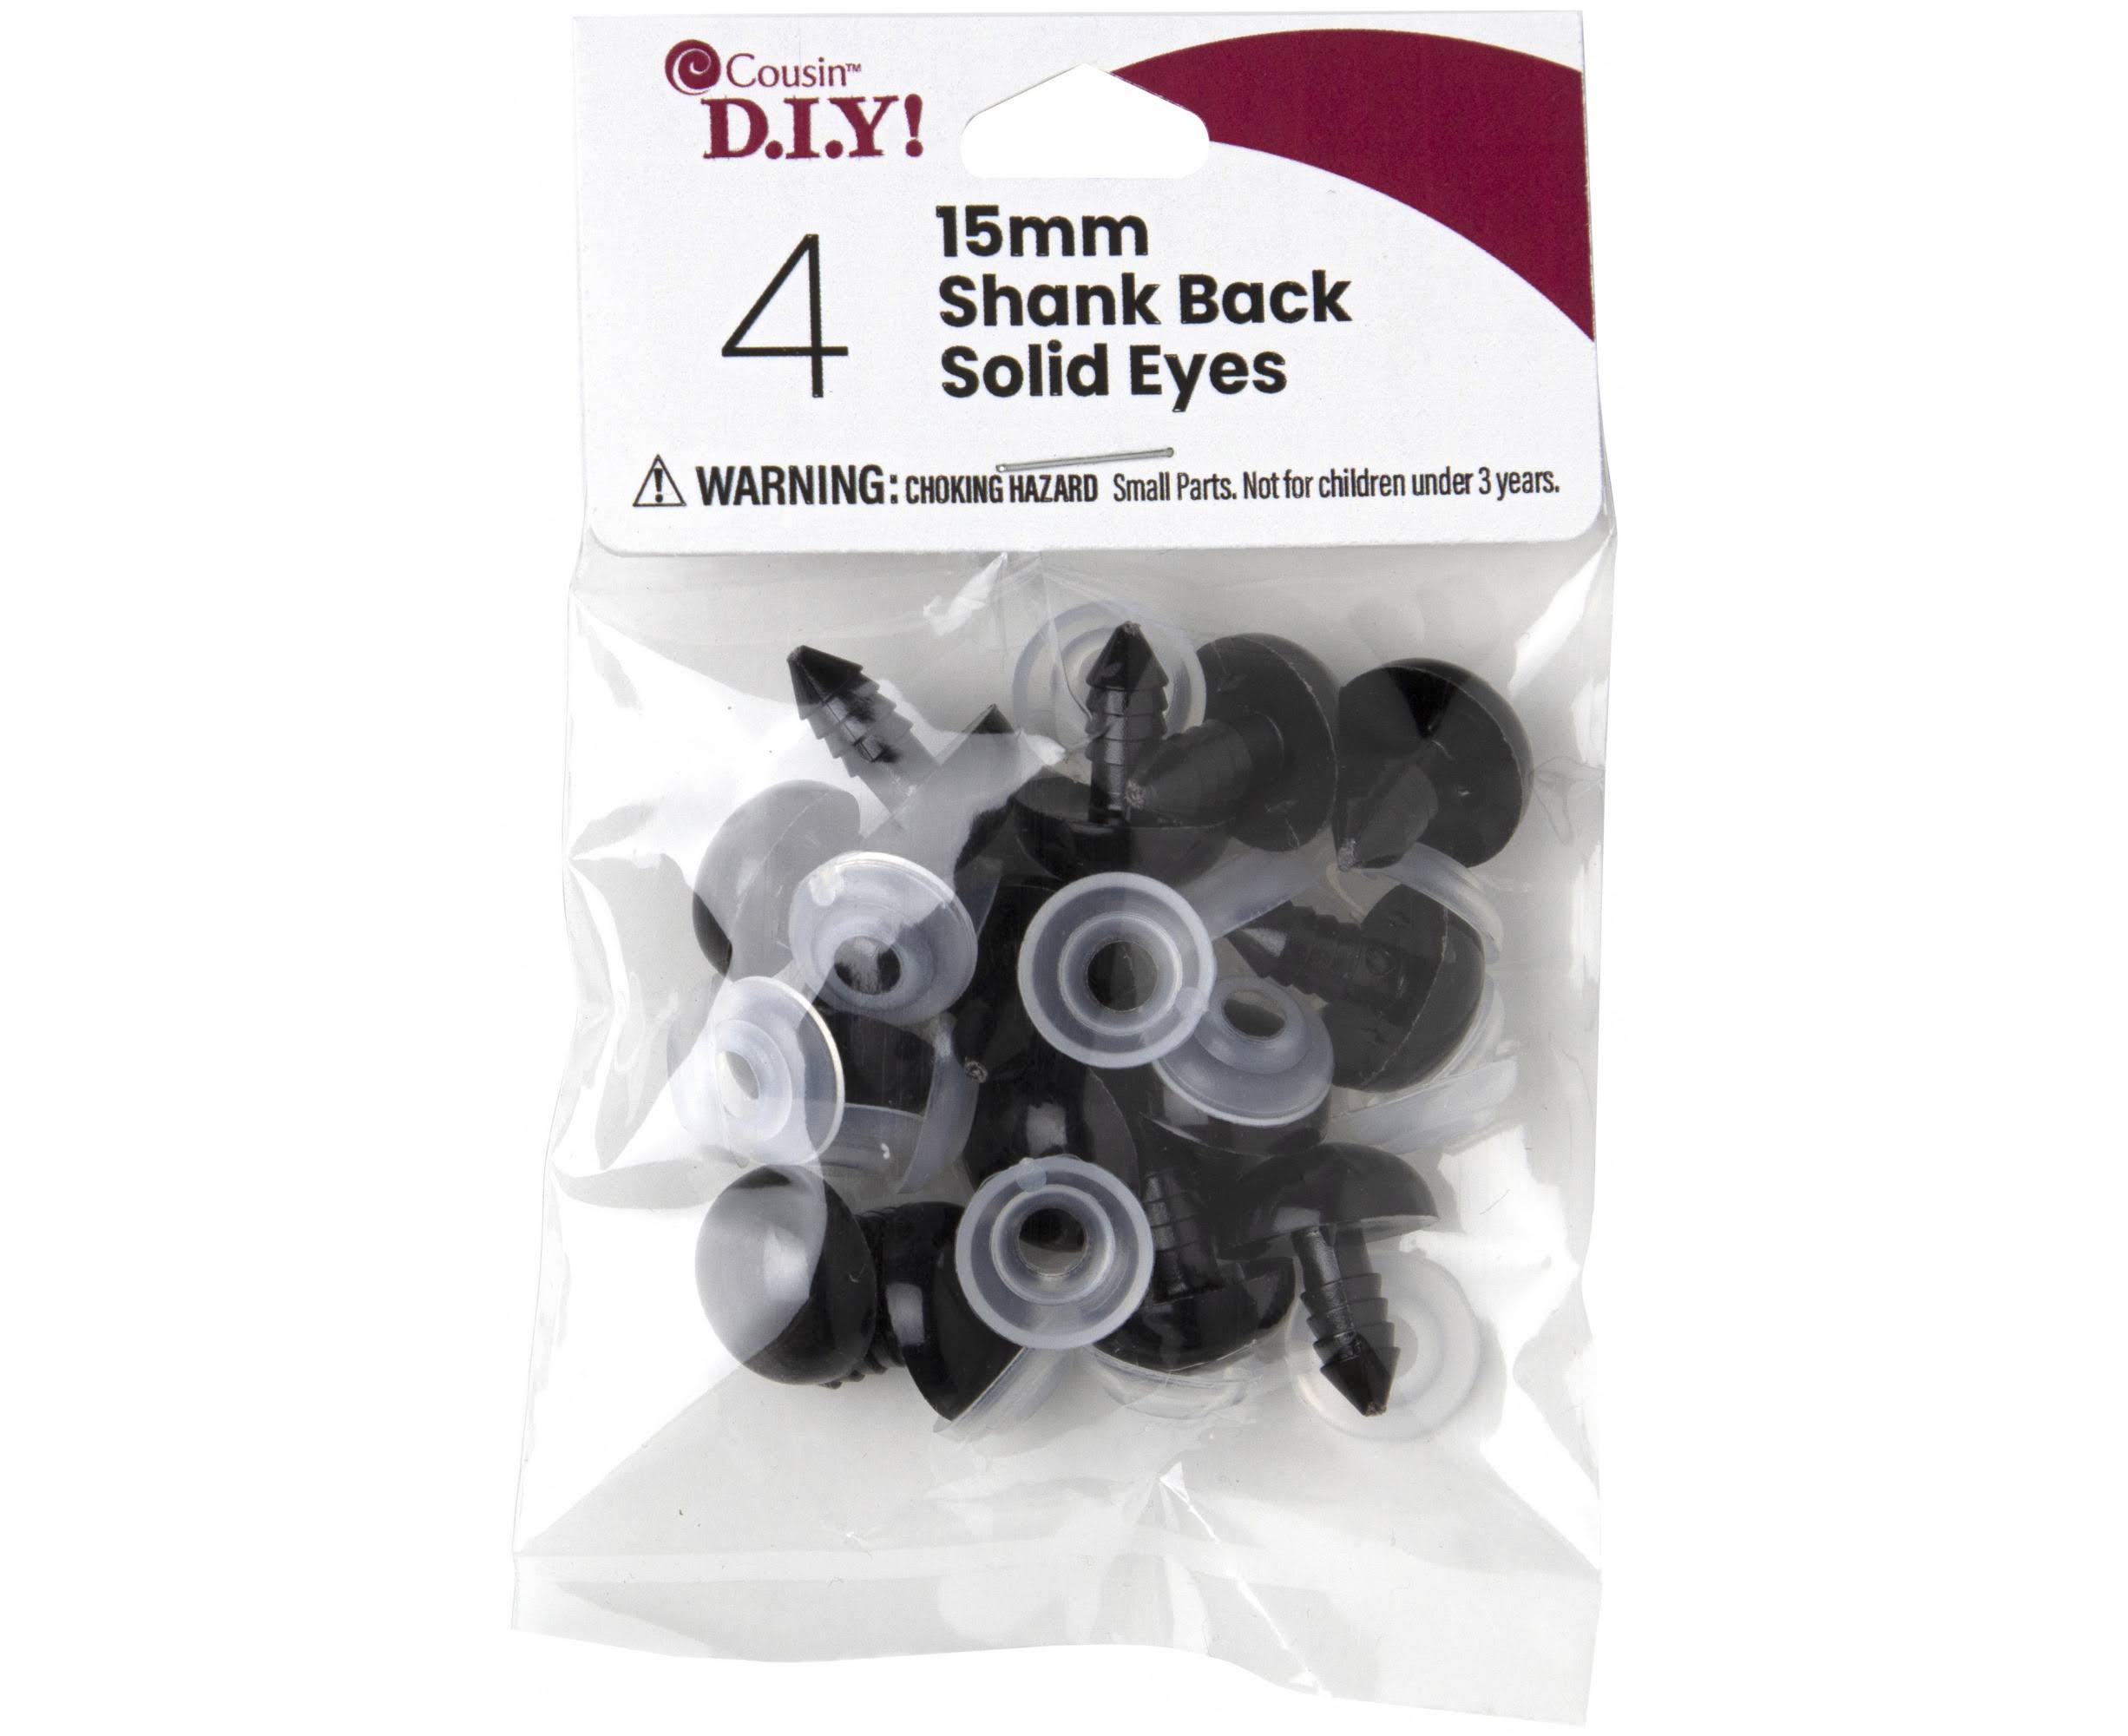 Cousin Shank Back Solid Eyes 15mm 4 Pack - Black